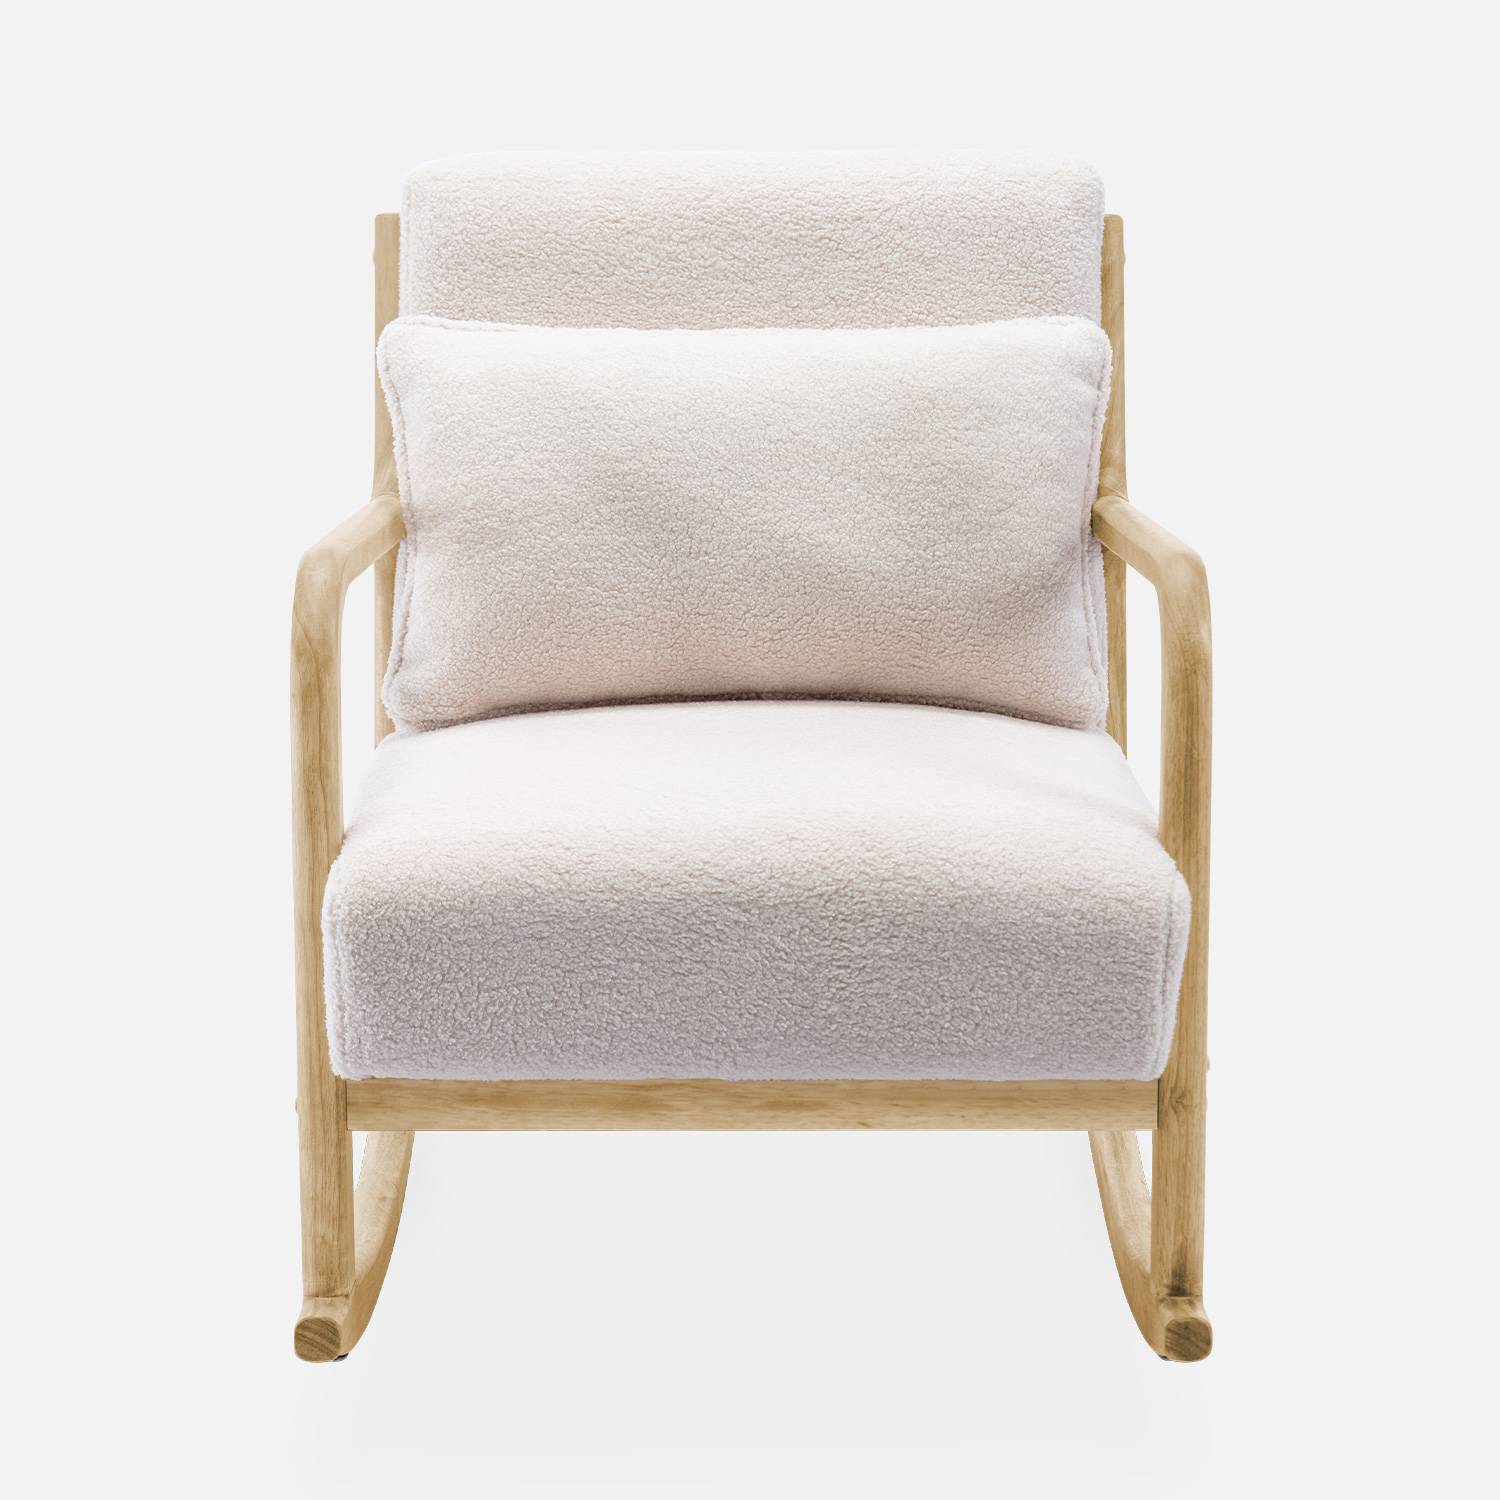 Cadeira de baloiço de design em madeira e tecido, caracóis brancos, 1 lugar, cadeira de baloiço escandinava Photo5